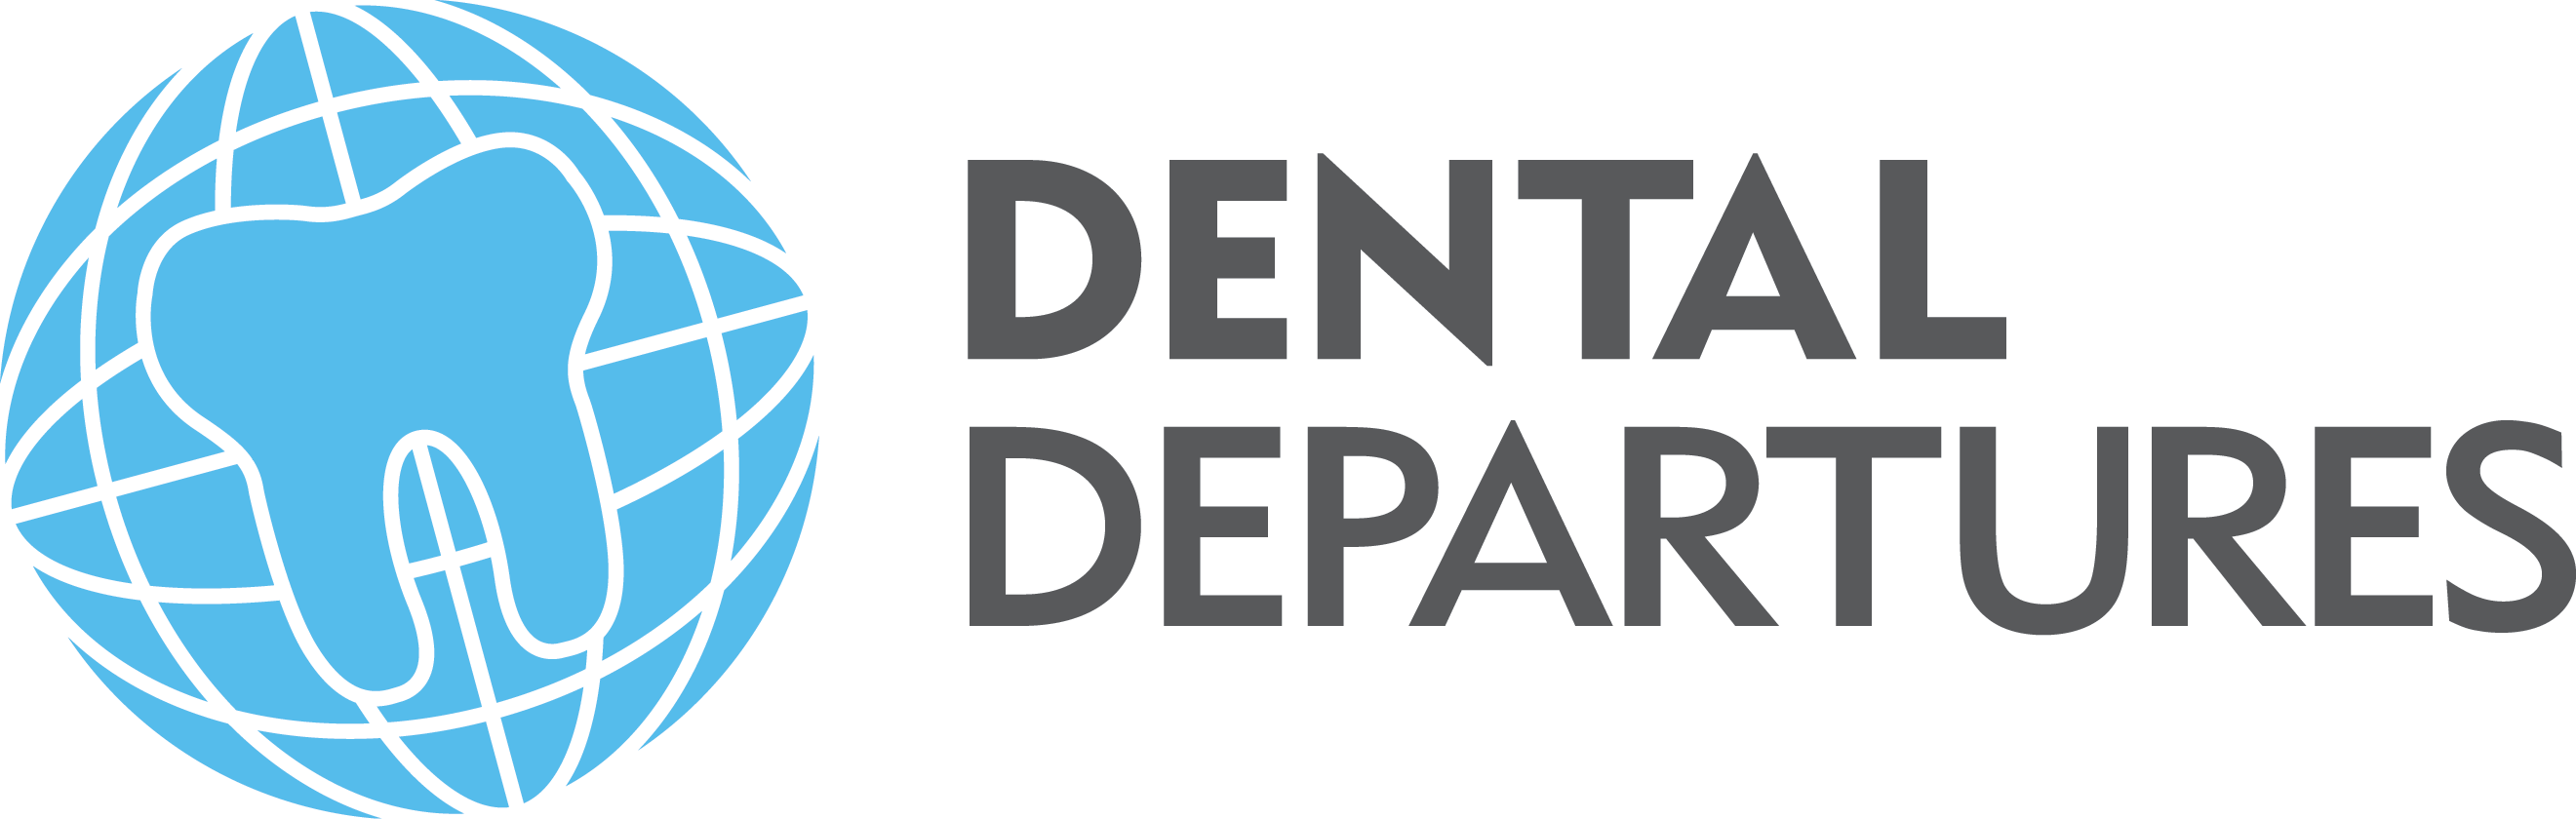 Dental Departures